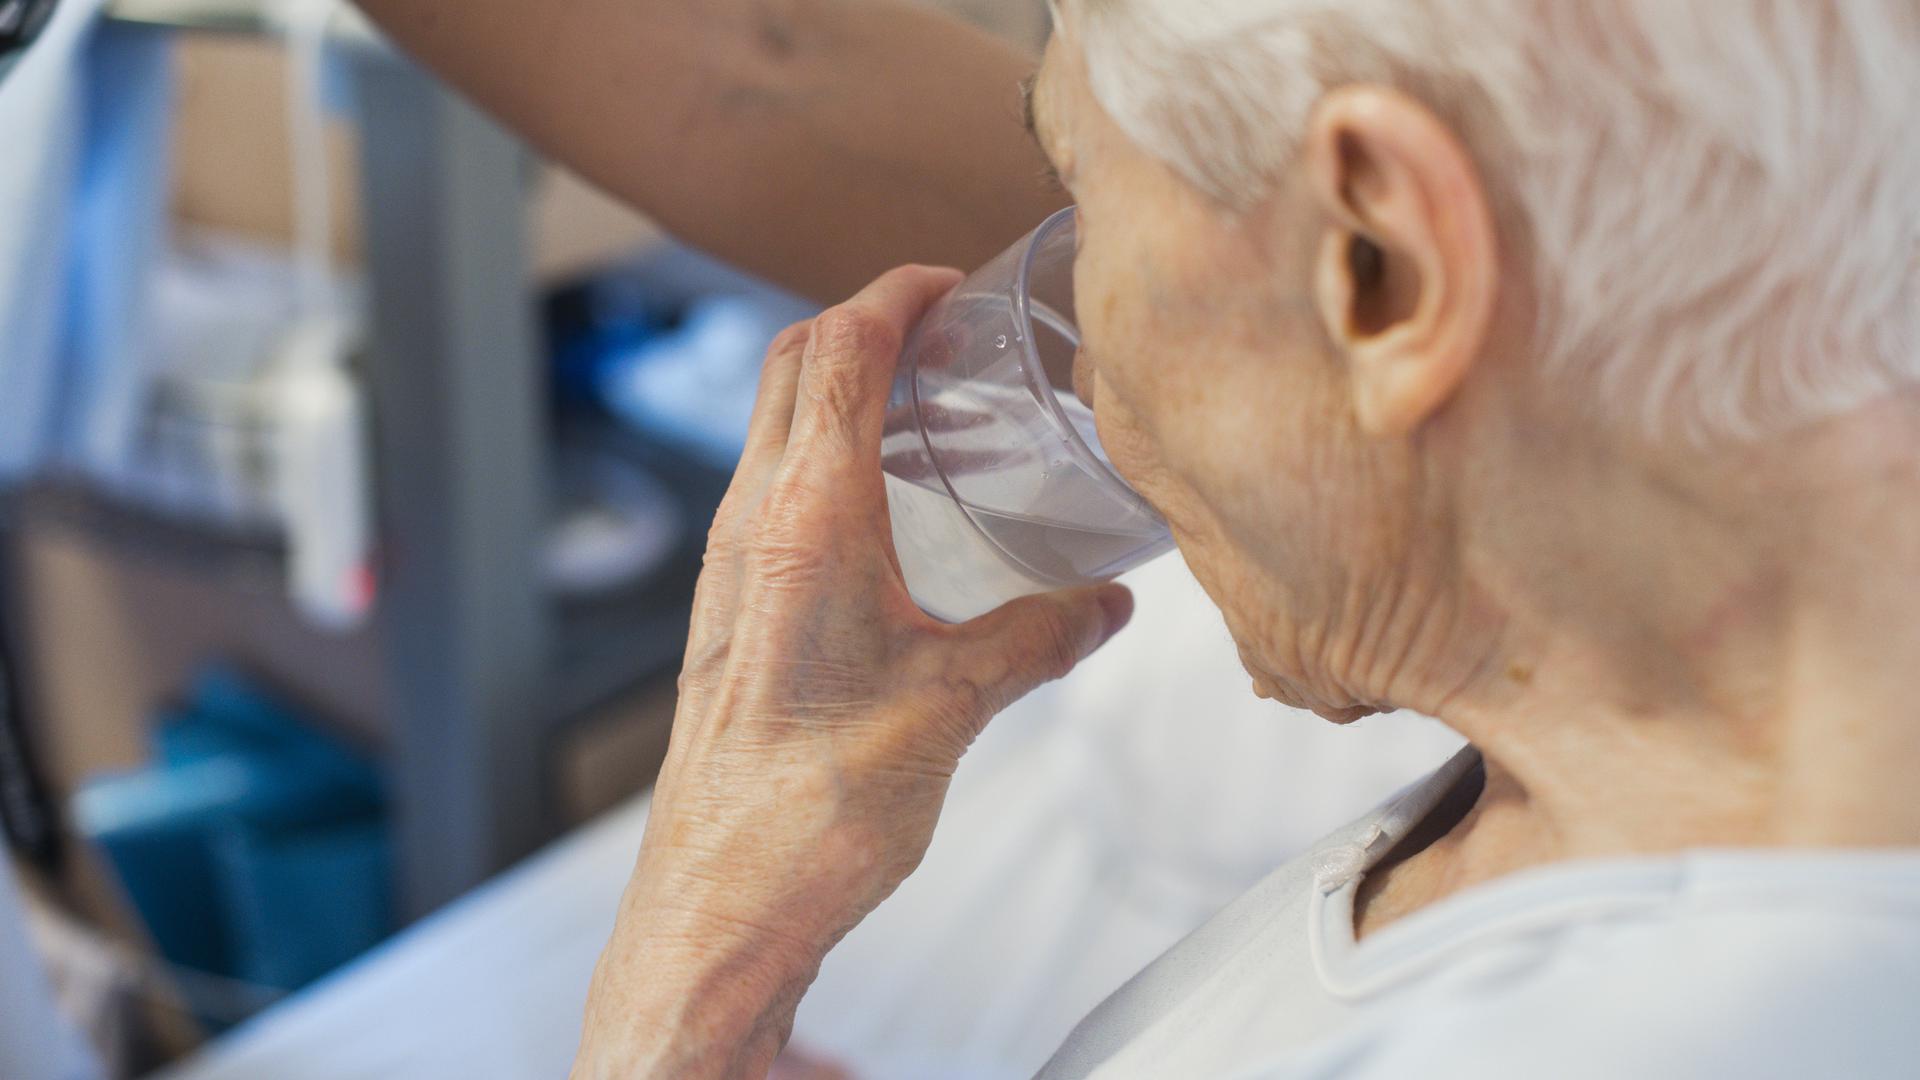 Bei großer Hitze: Senioren sollten ausreichend Flüssigkeit zu sich nehmen. Bereitgestellte Getränke können sie daran erinnern und Abhilfe schaffen.